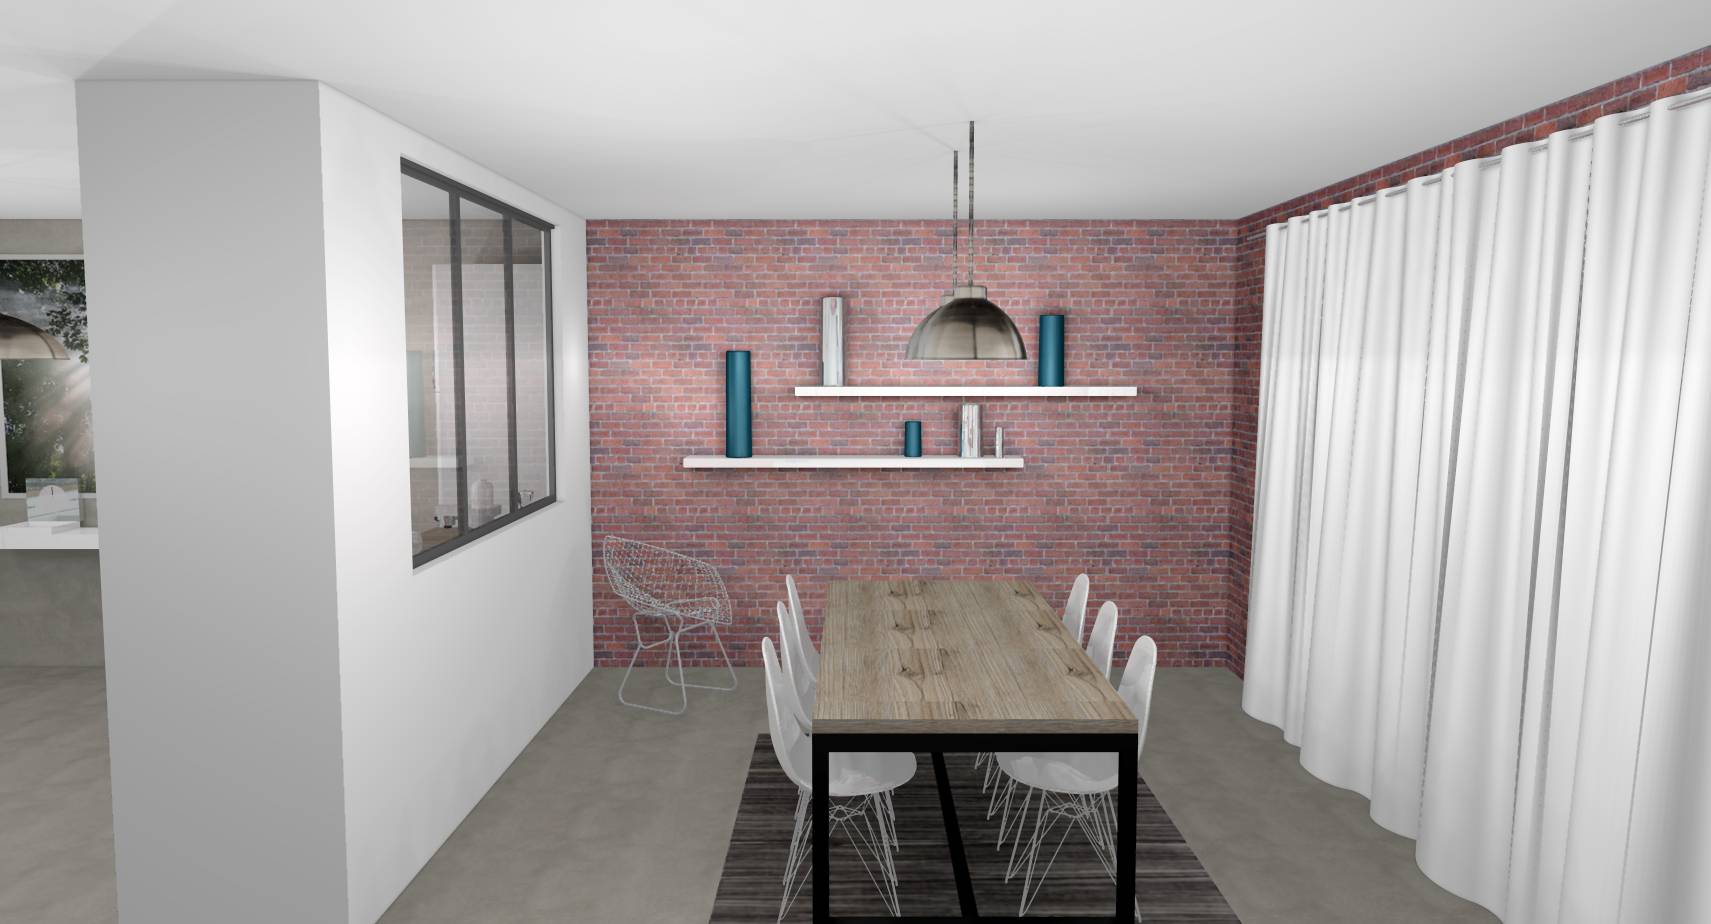 Salle à manger cuisine ouverte industrielles verrière bois métal laqué blanc briques